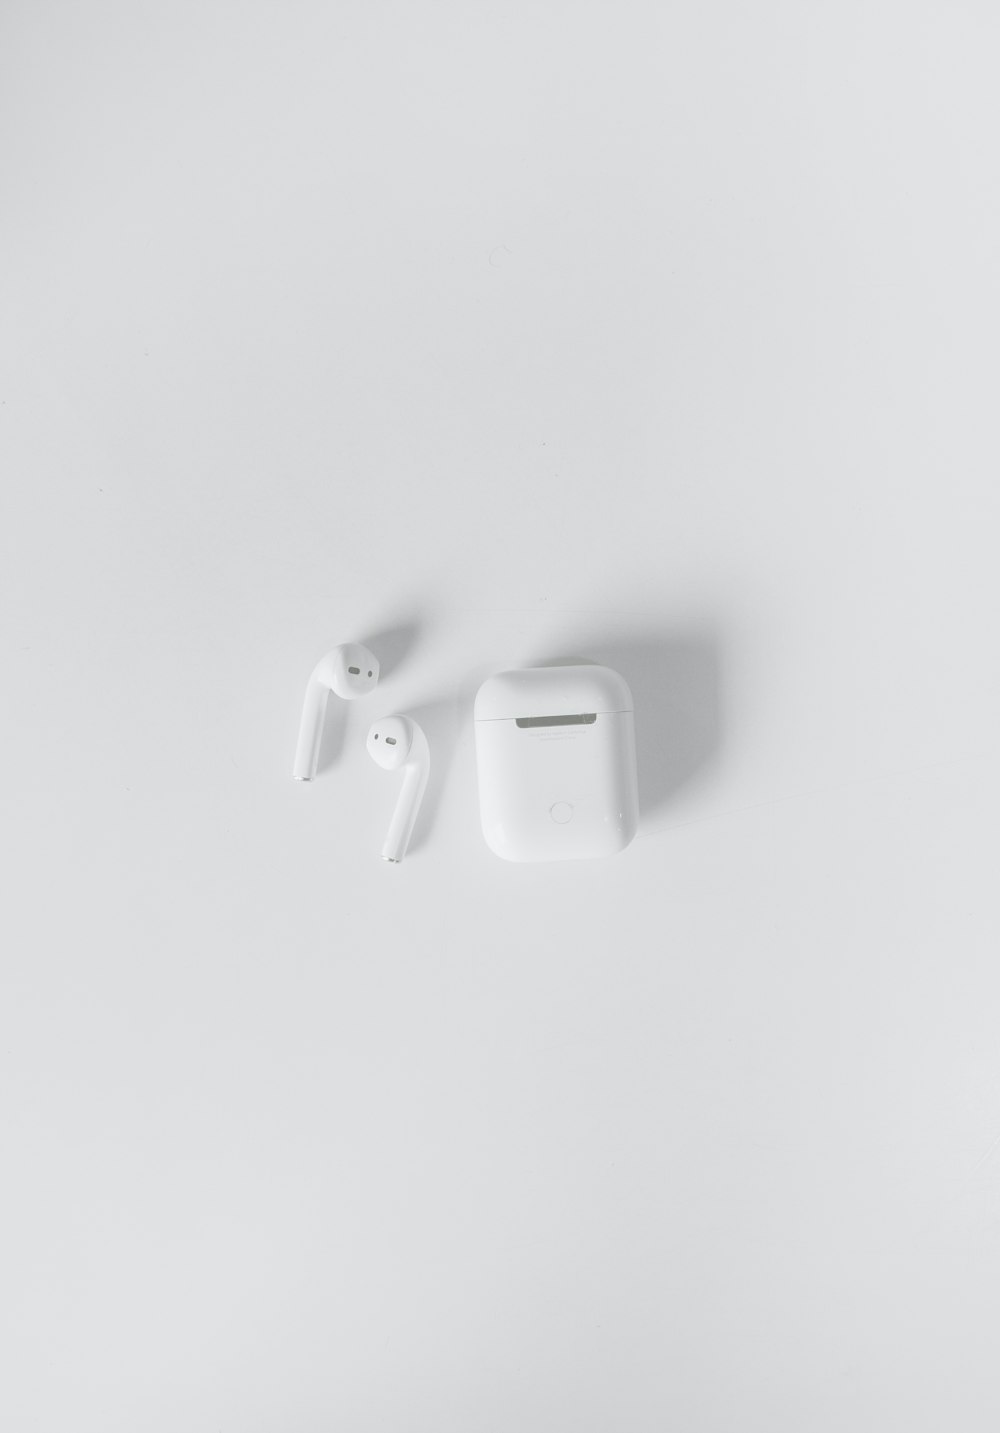 white apple earpods on white surface